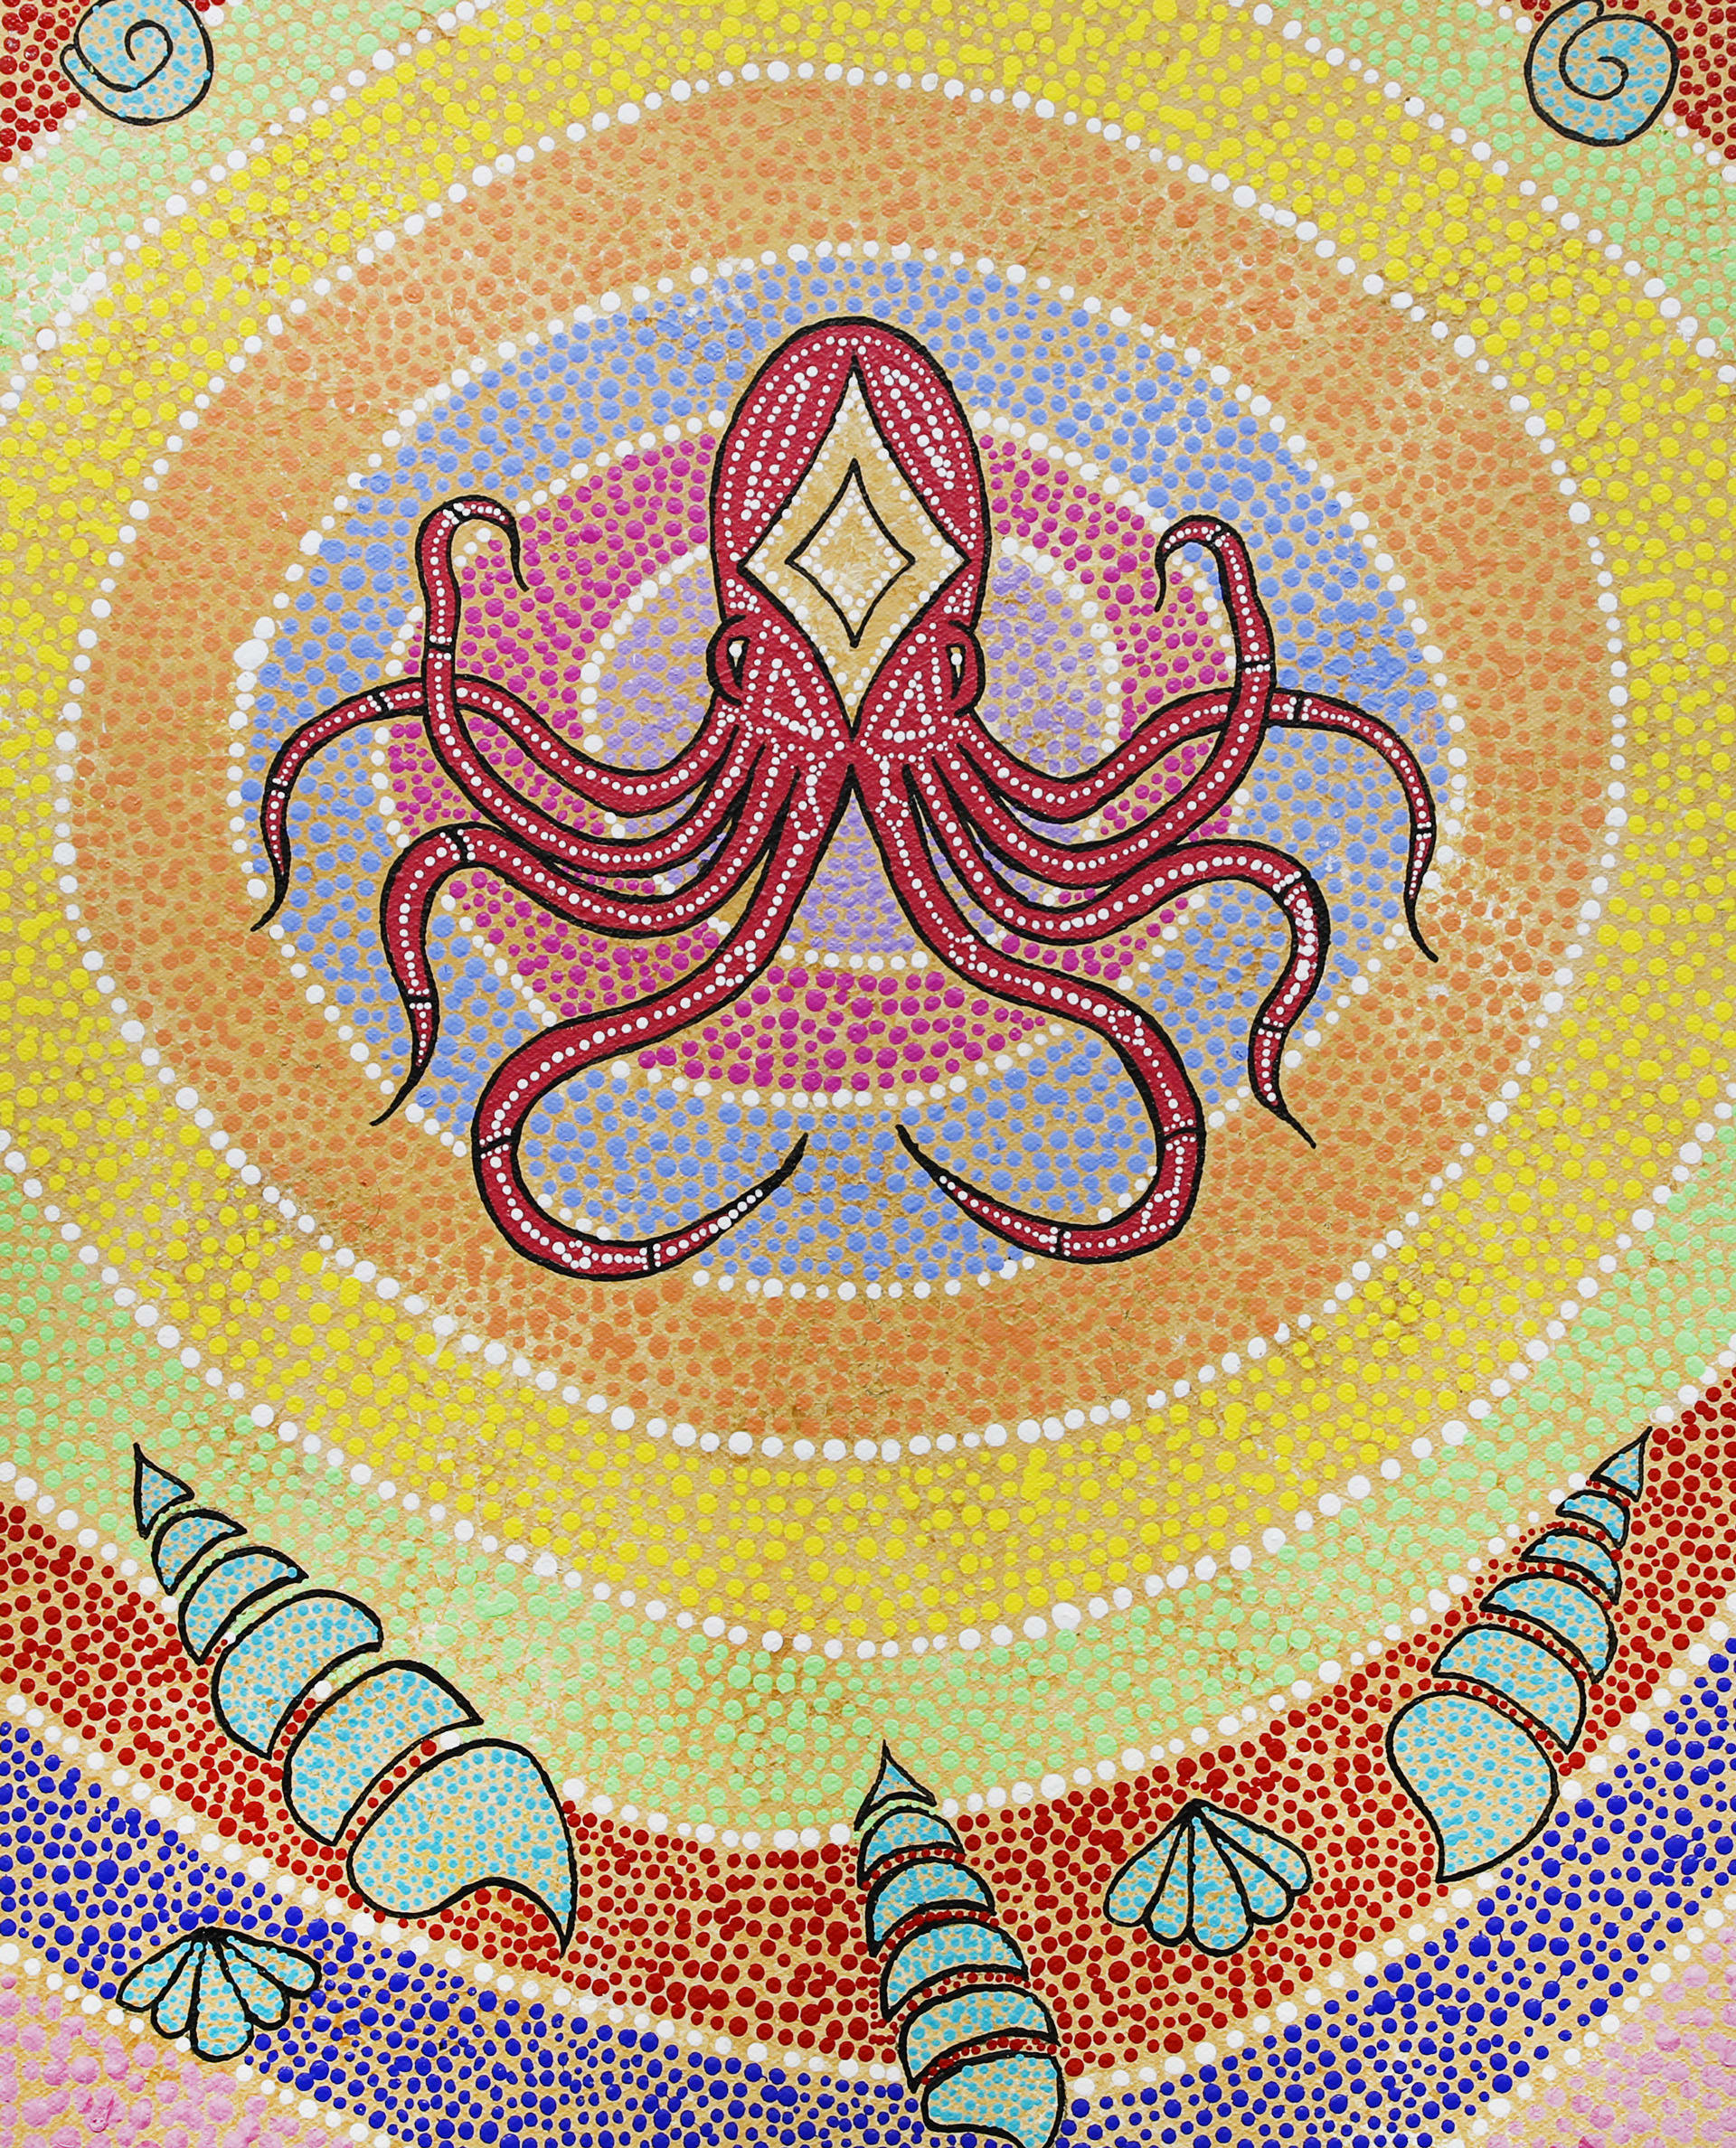 Octopus, Stephen Oliver, 2021.